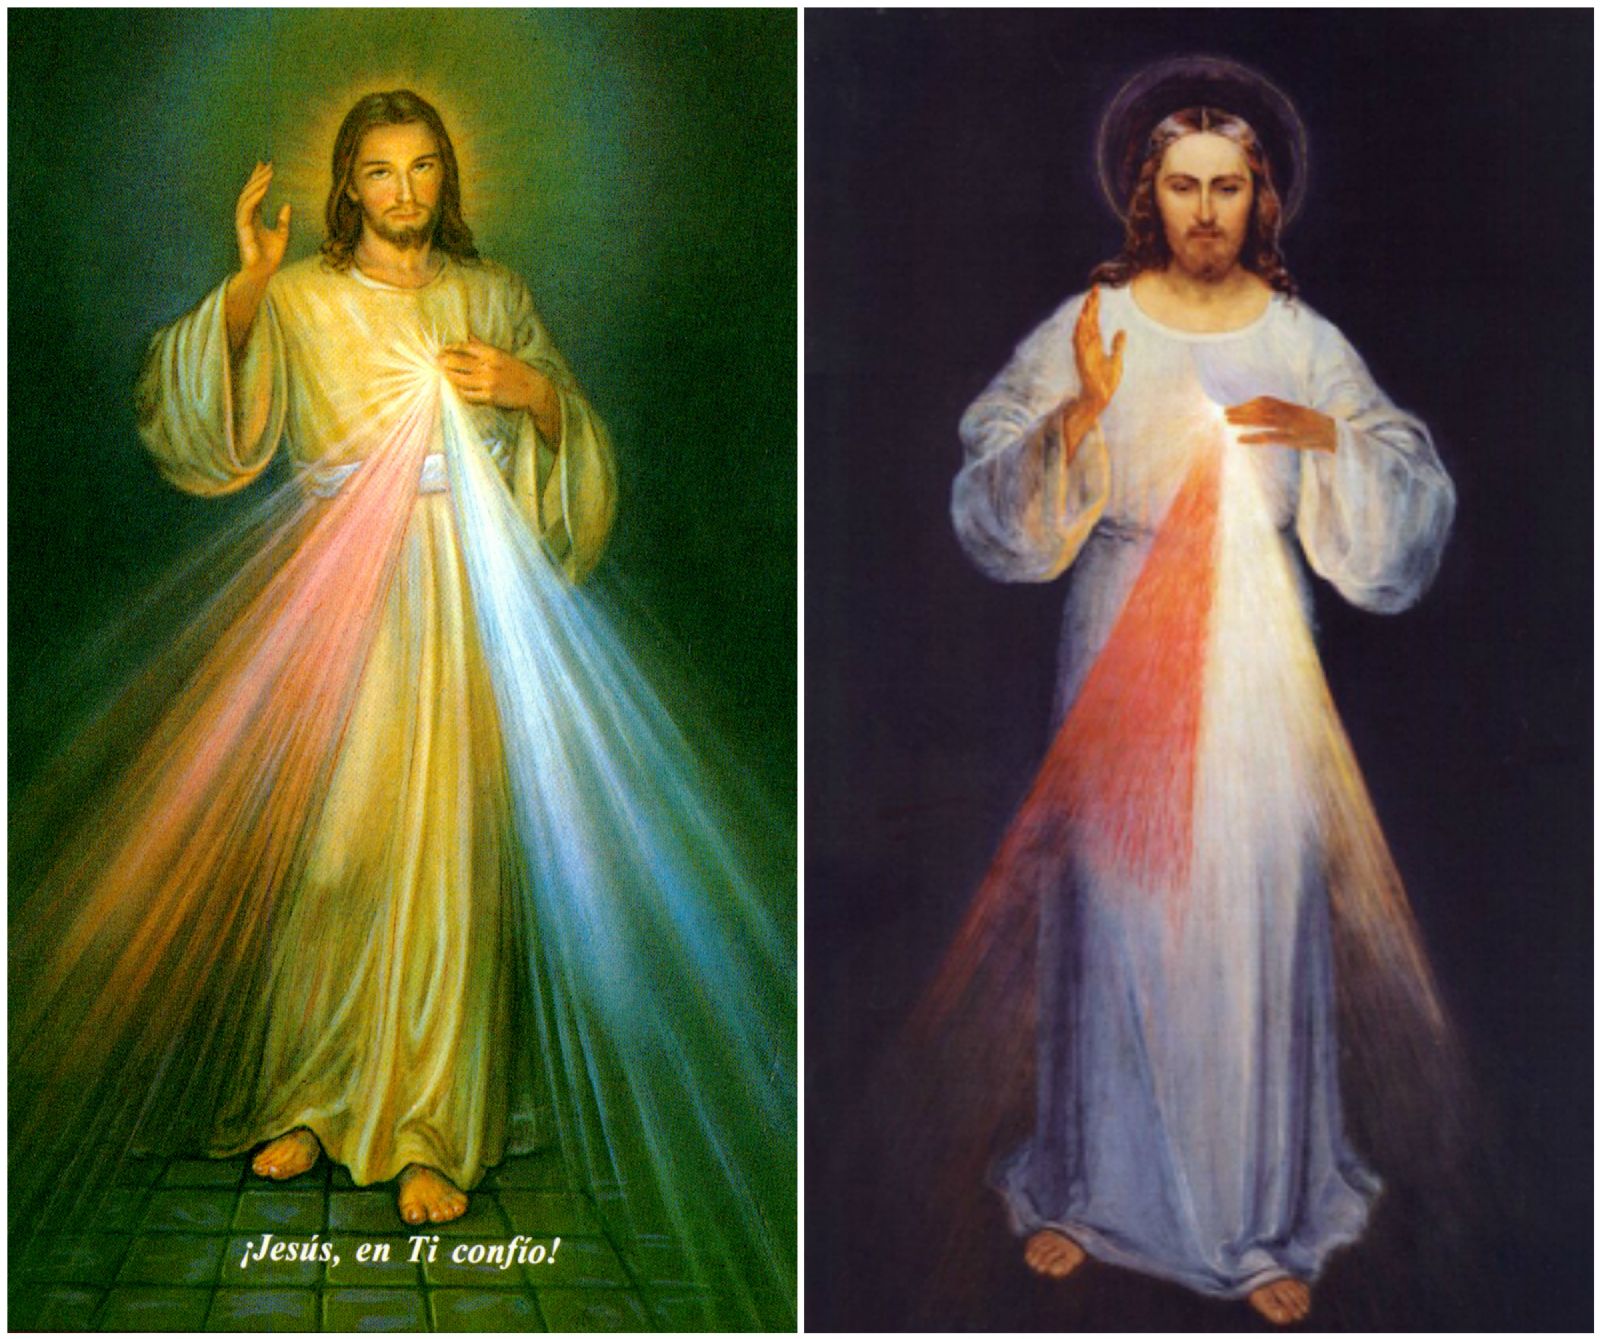 Las dos versiones del Jesús en tí confío del cuadro de la Divina Misericordia